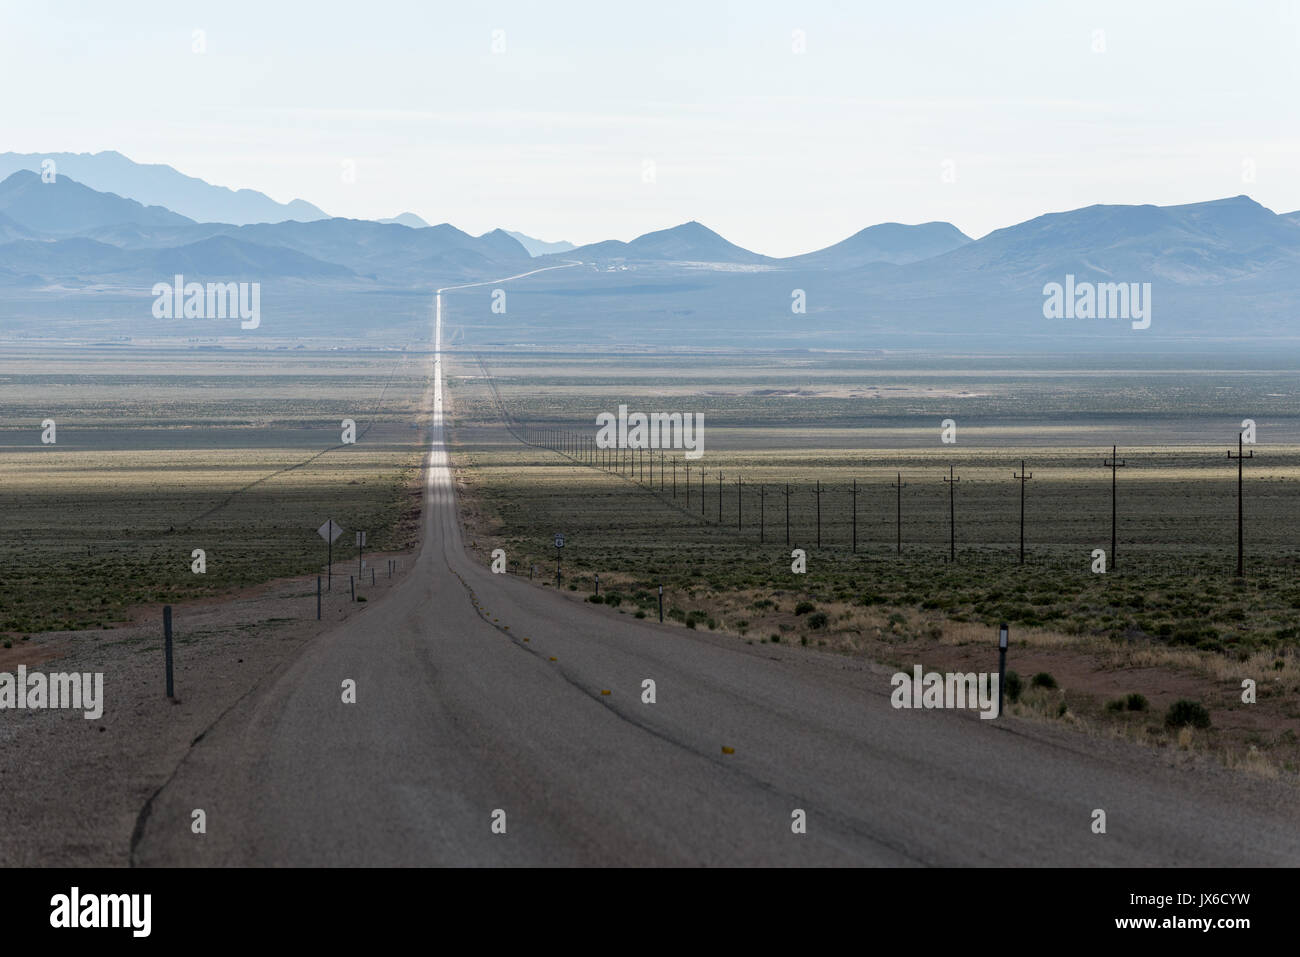 Strada desolata nel bacino e la gamma regione del Nevada. Foto Stock